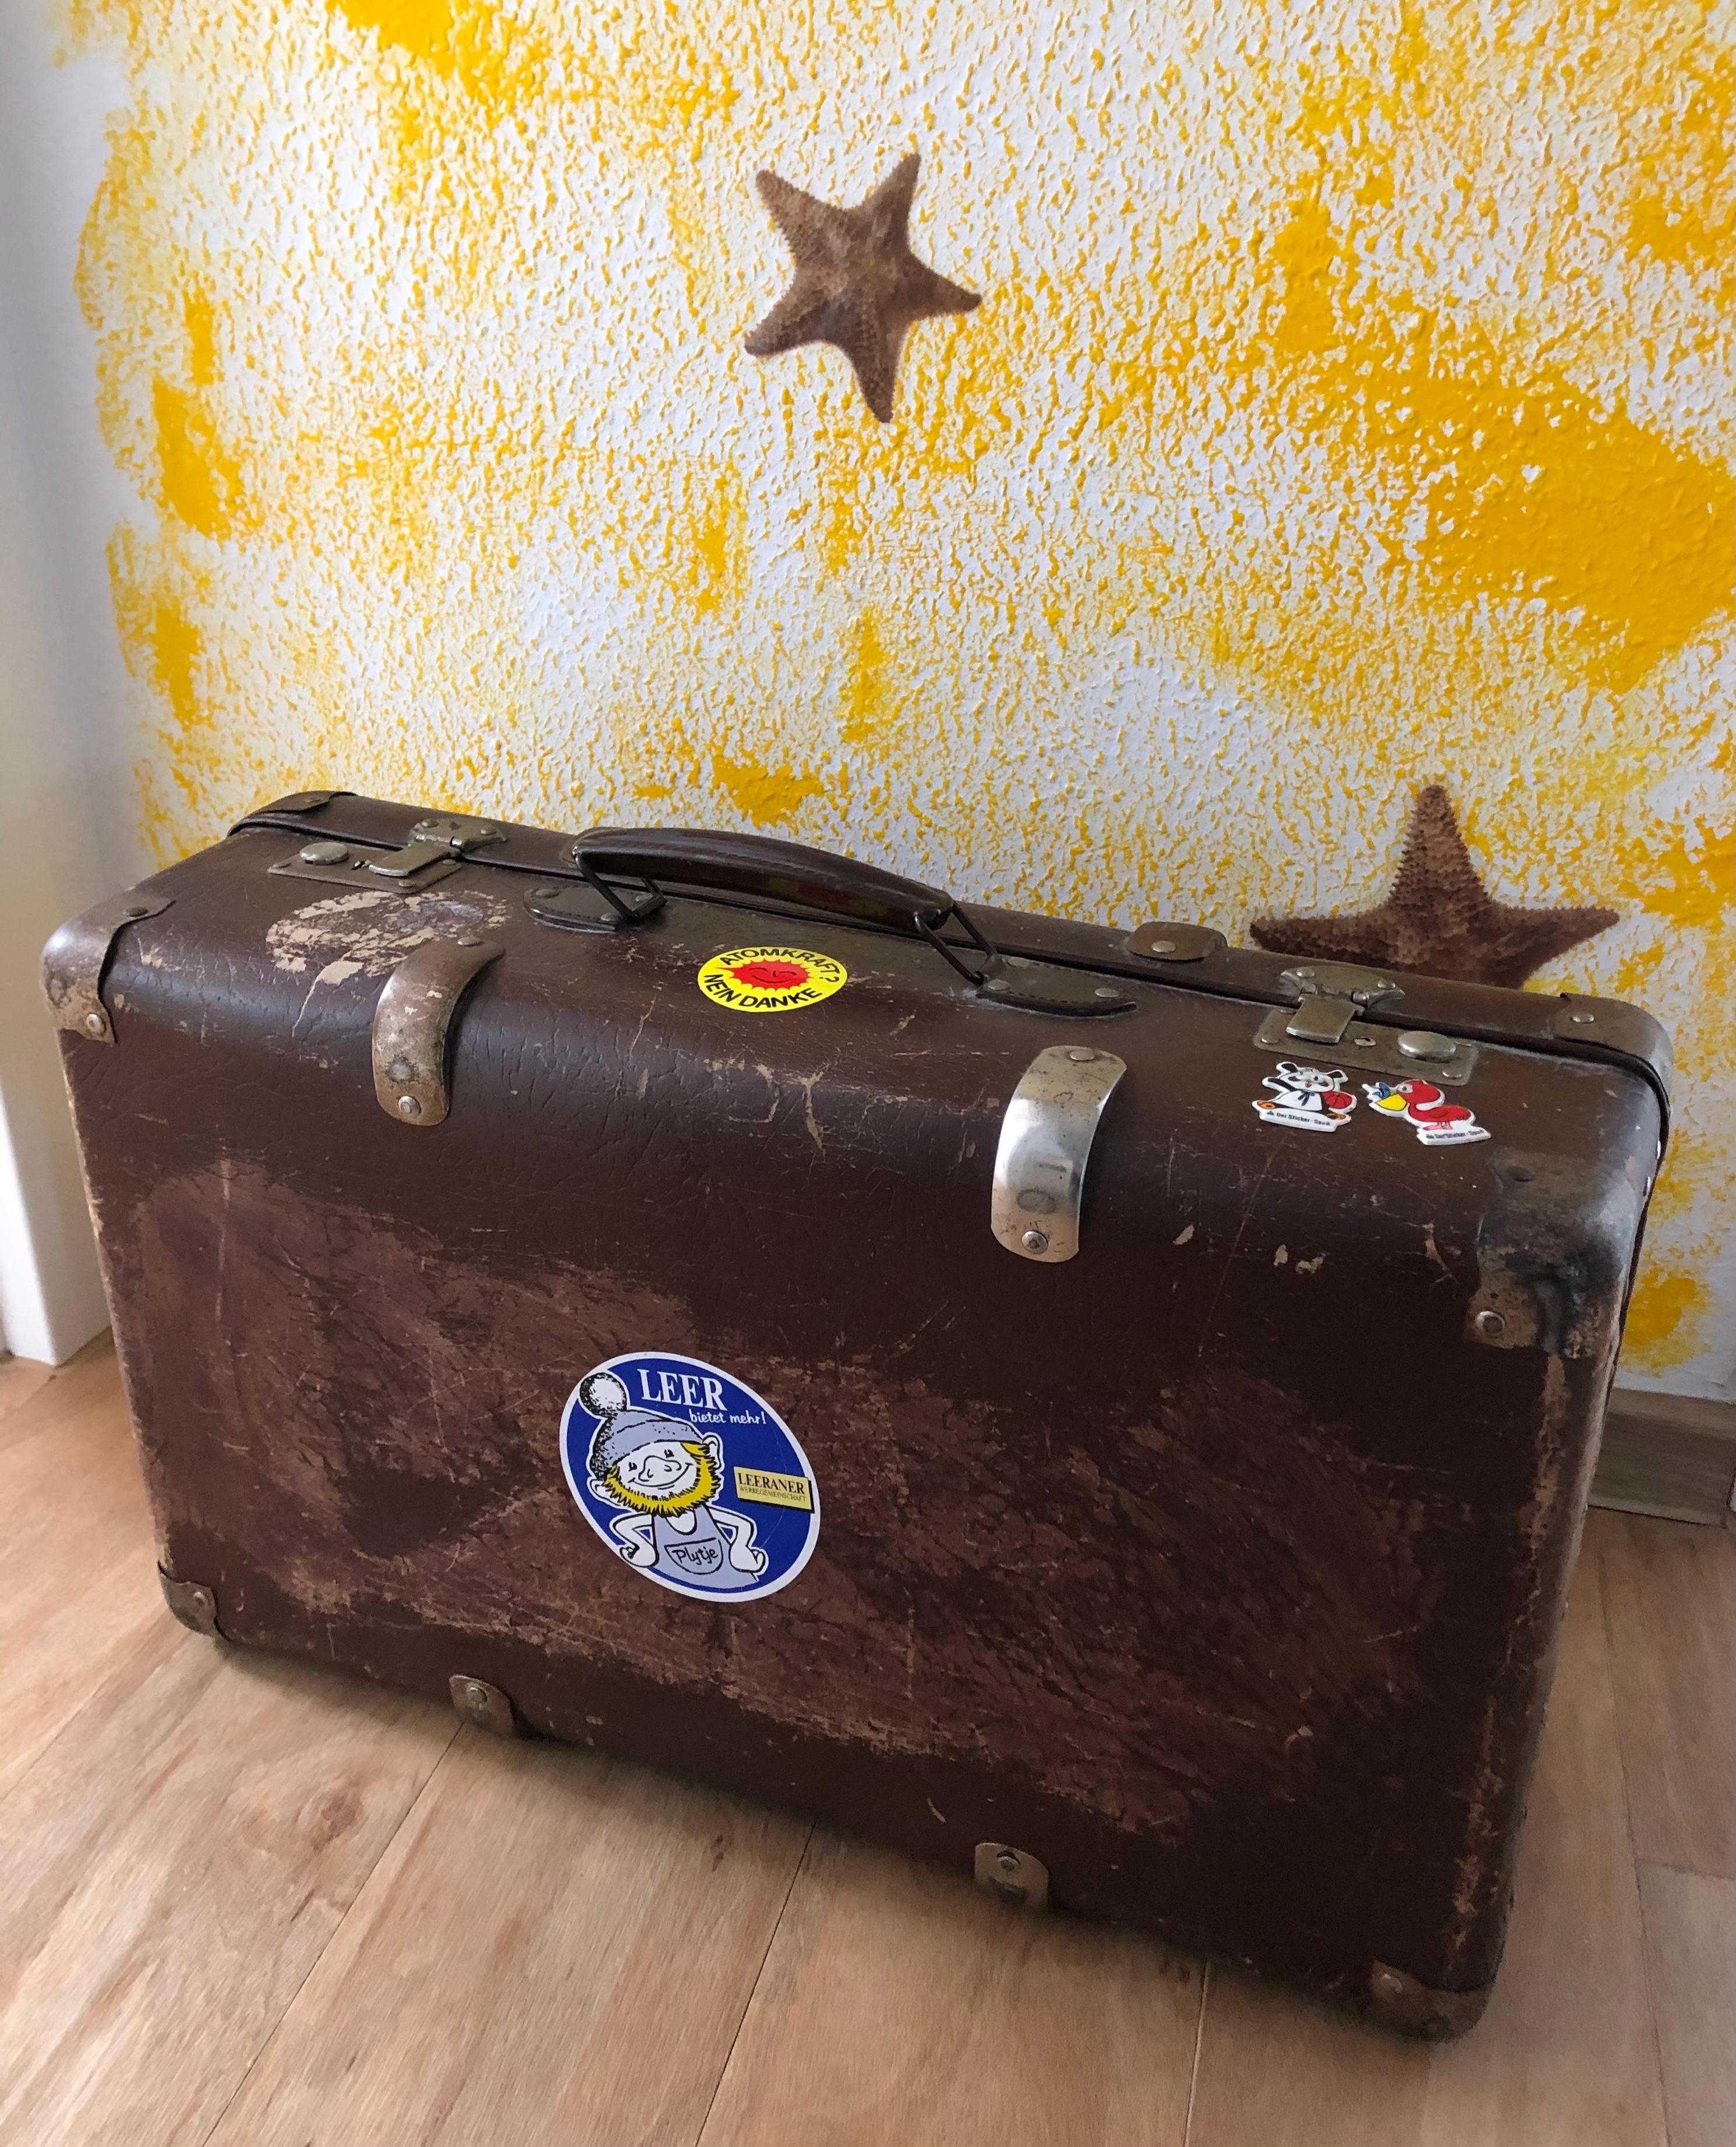 #allmybagsarepacked #koffer #reise #erinnerungen #deko